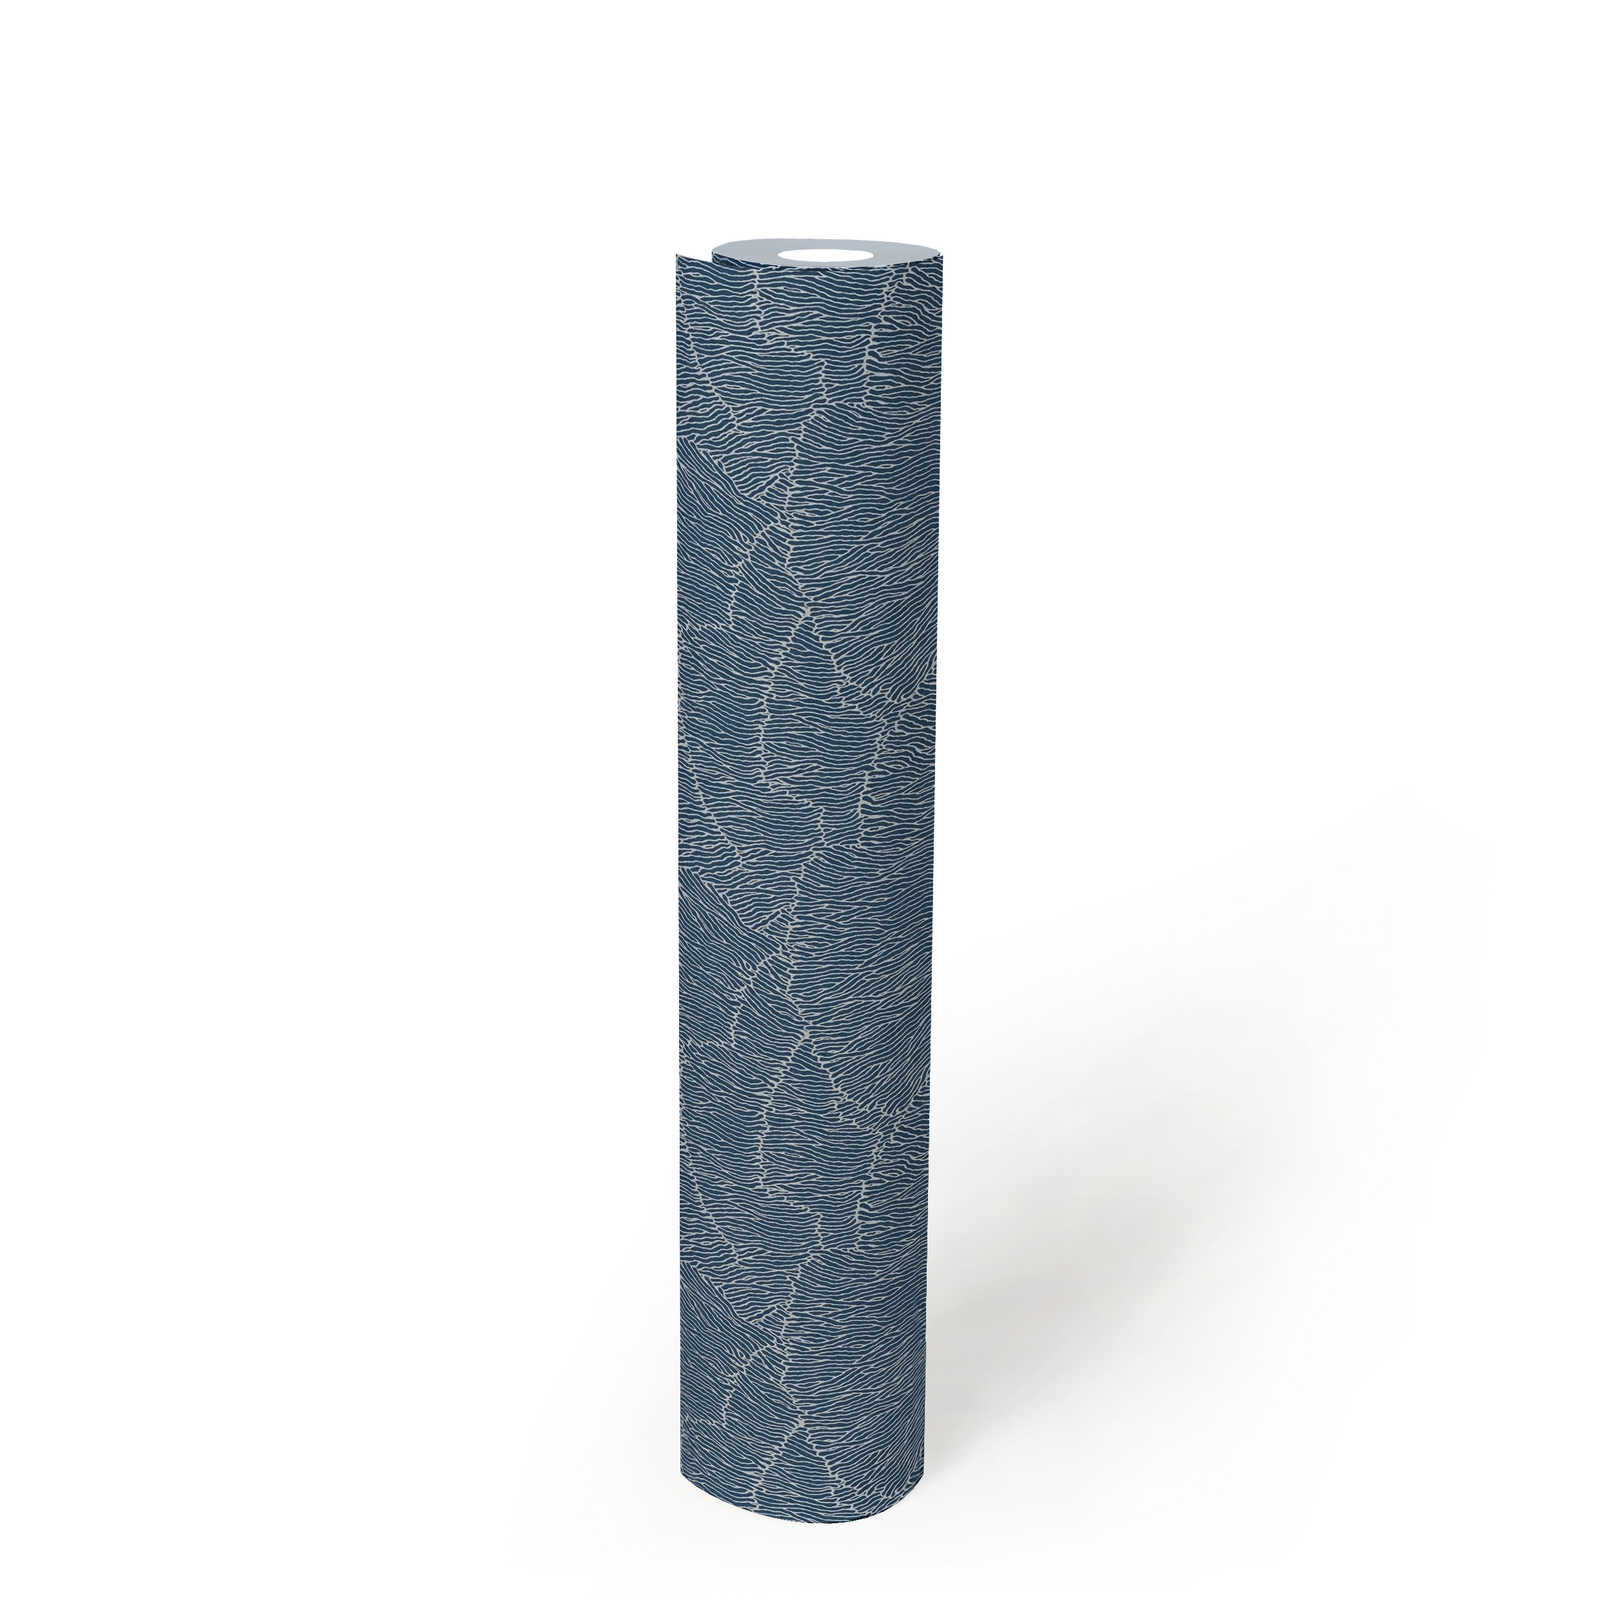             Vliestapete mit Linienmuster – Silber, Blau, Metallic
        